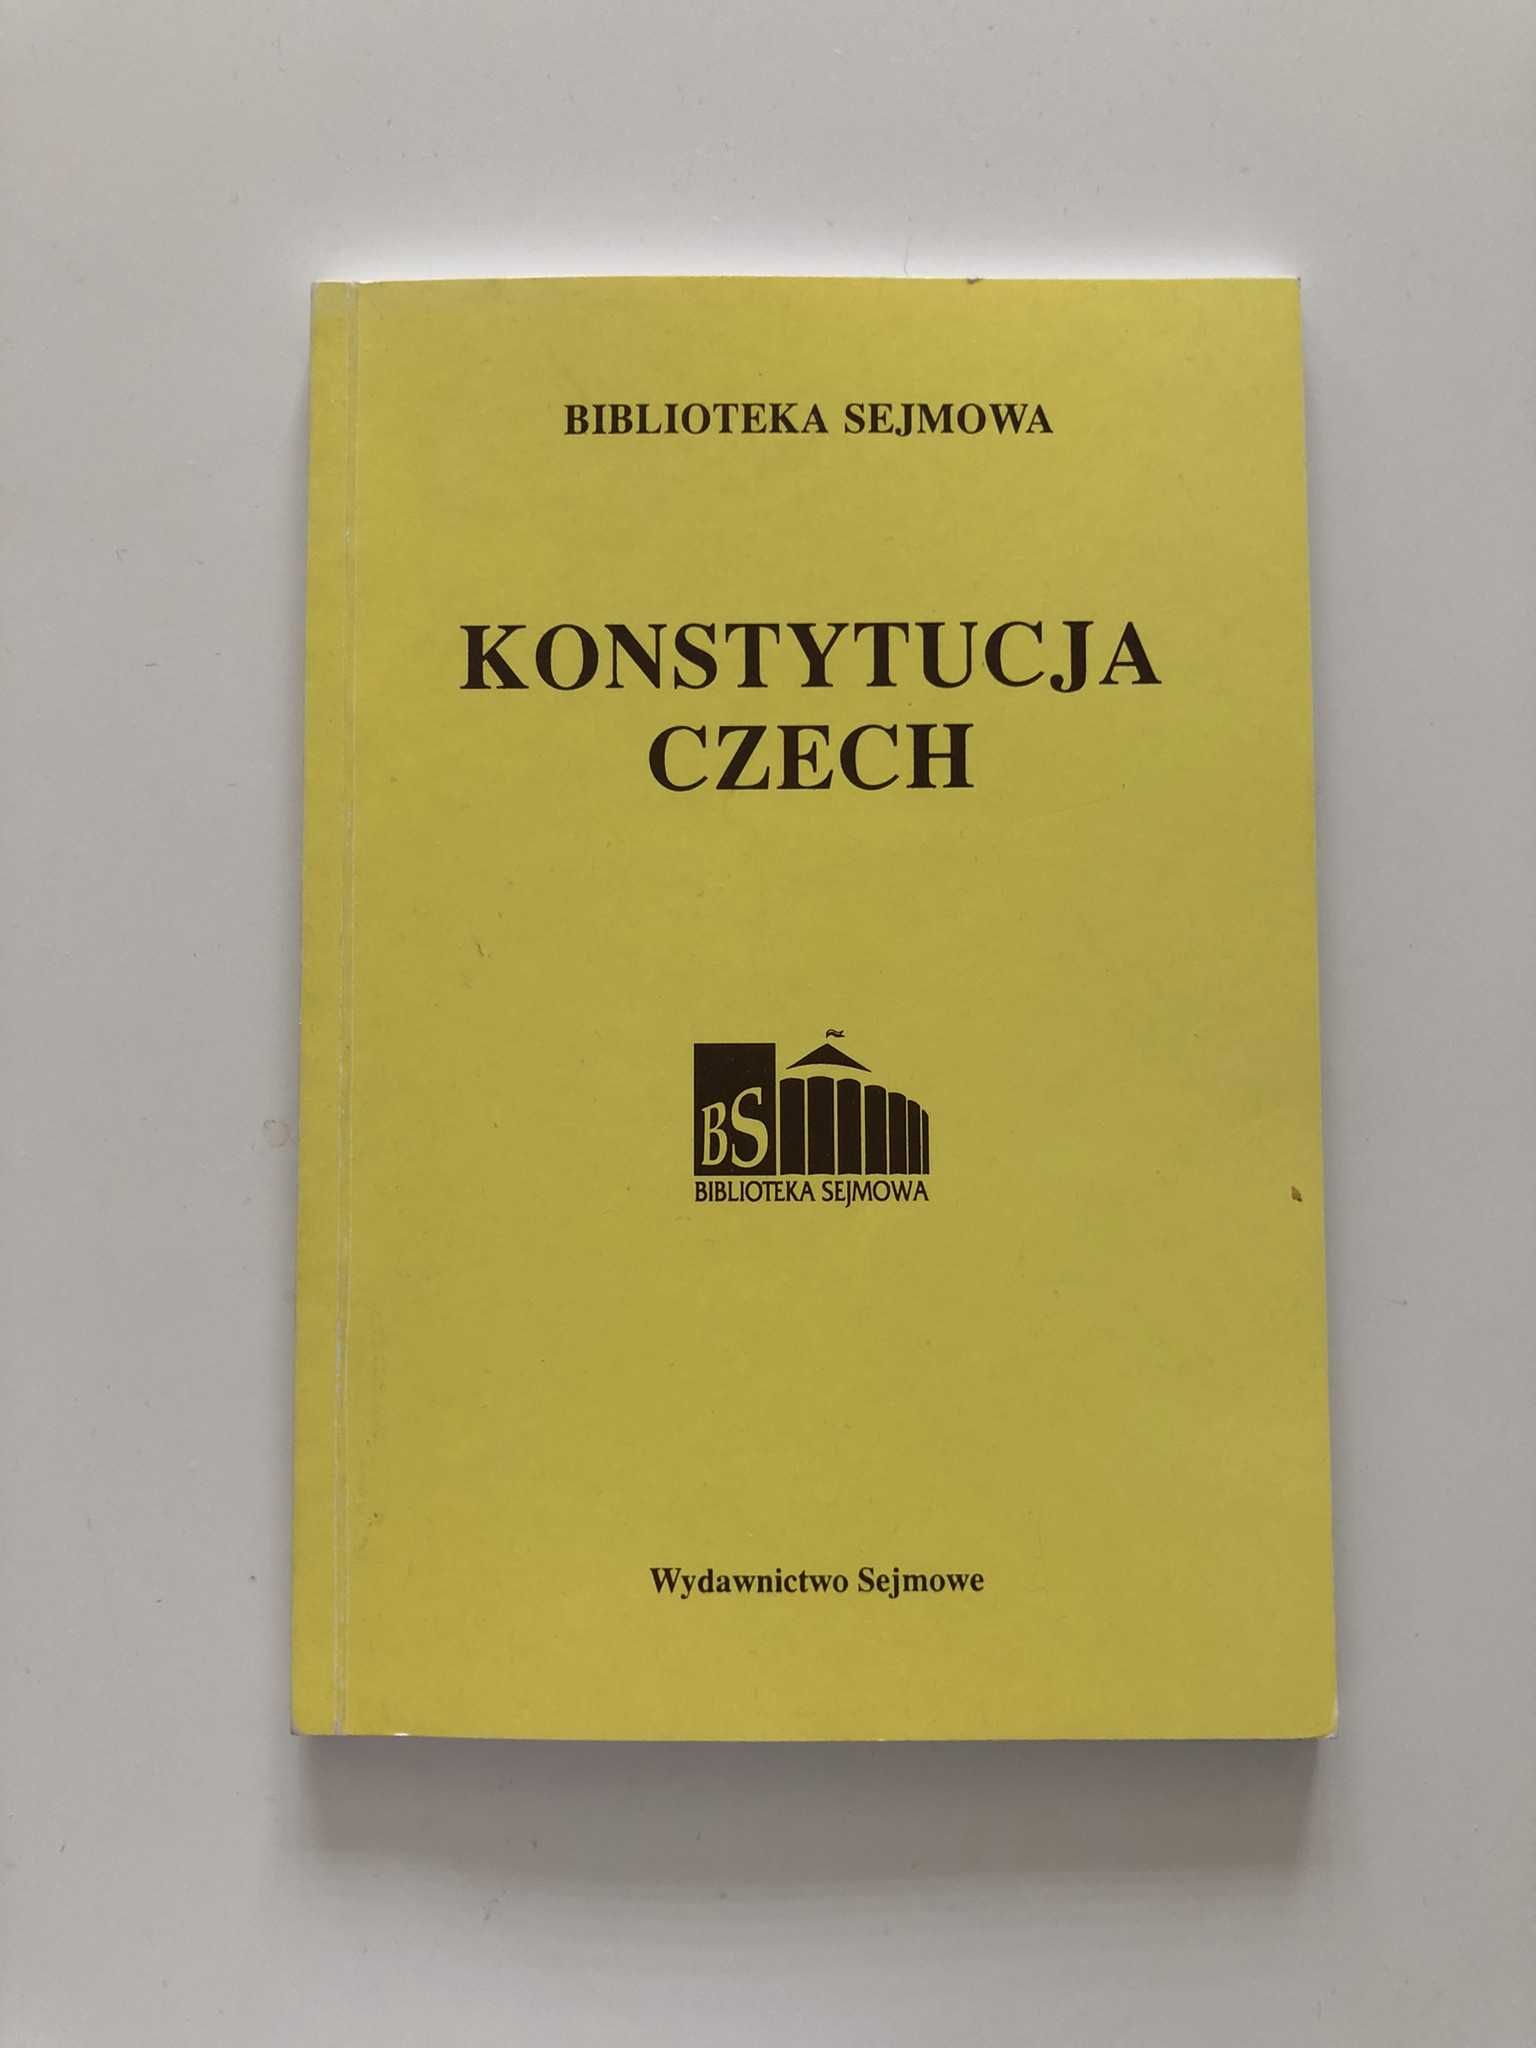 Konstytucja Czech Biblioteka Sejmowa Wydawnictwo Sejmowe